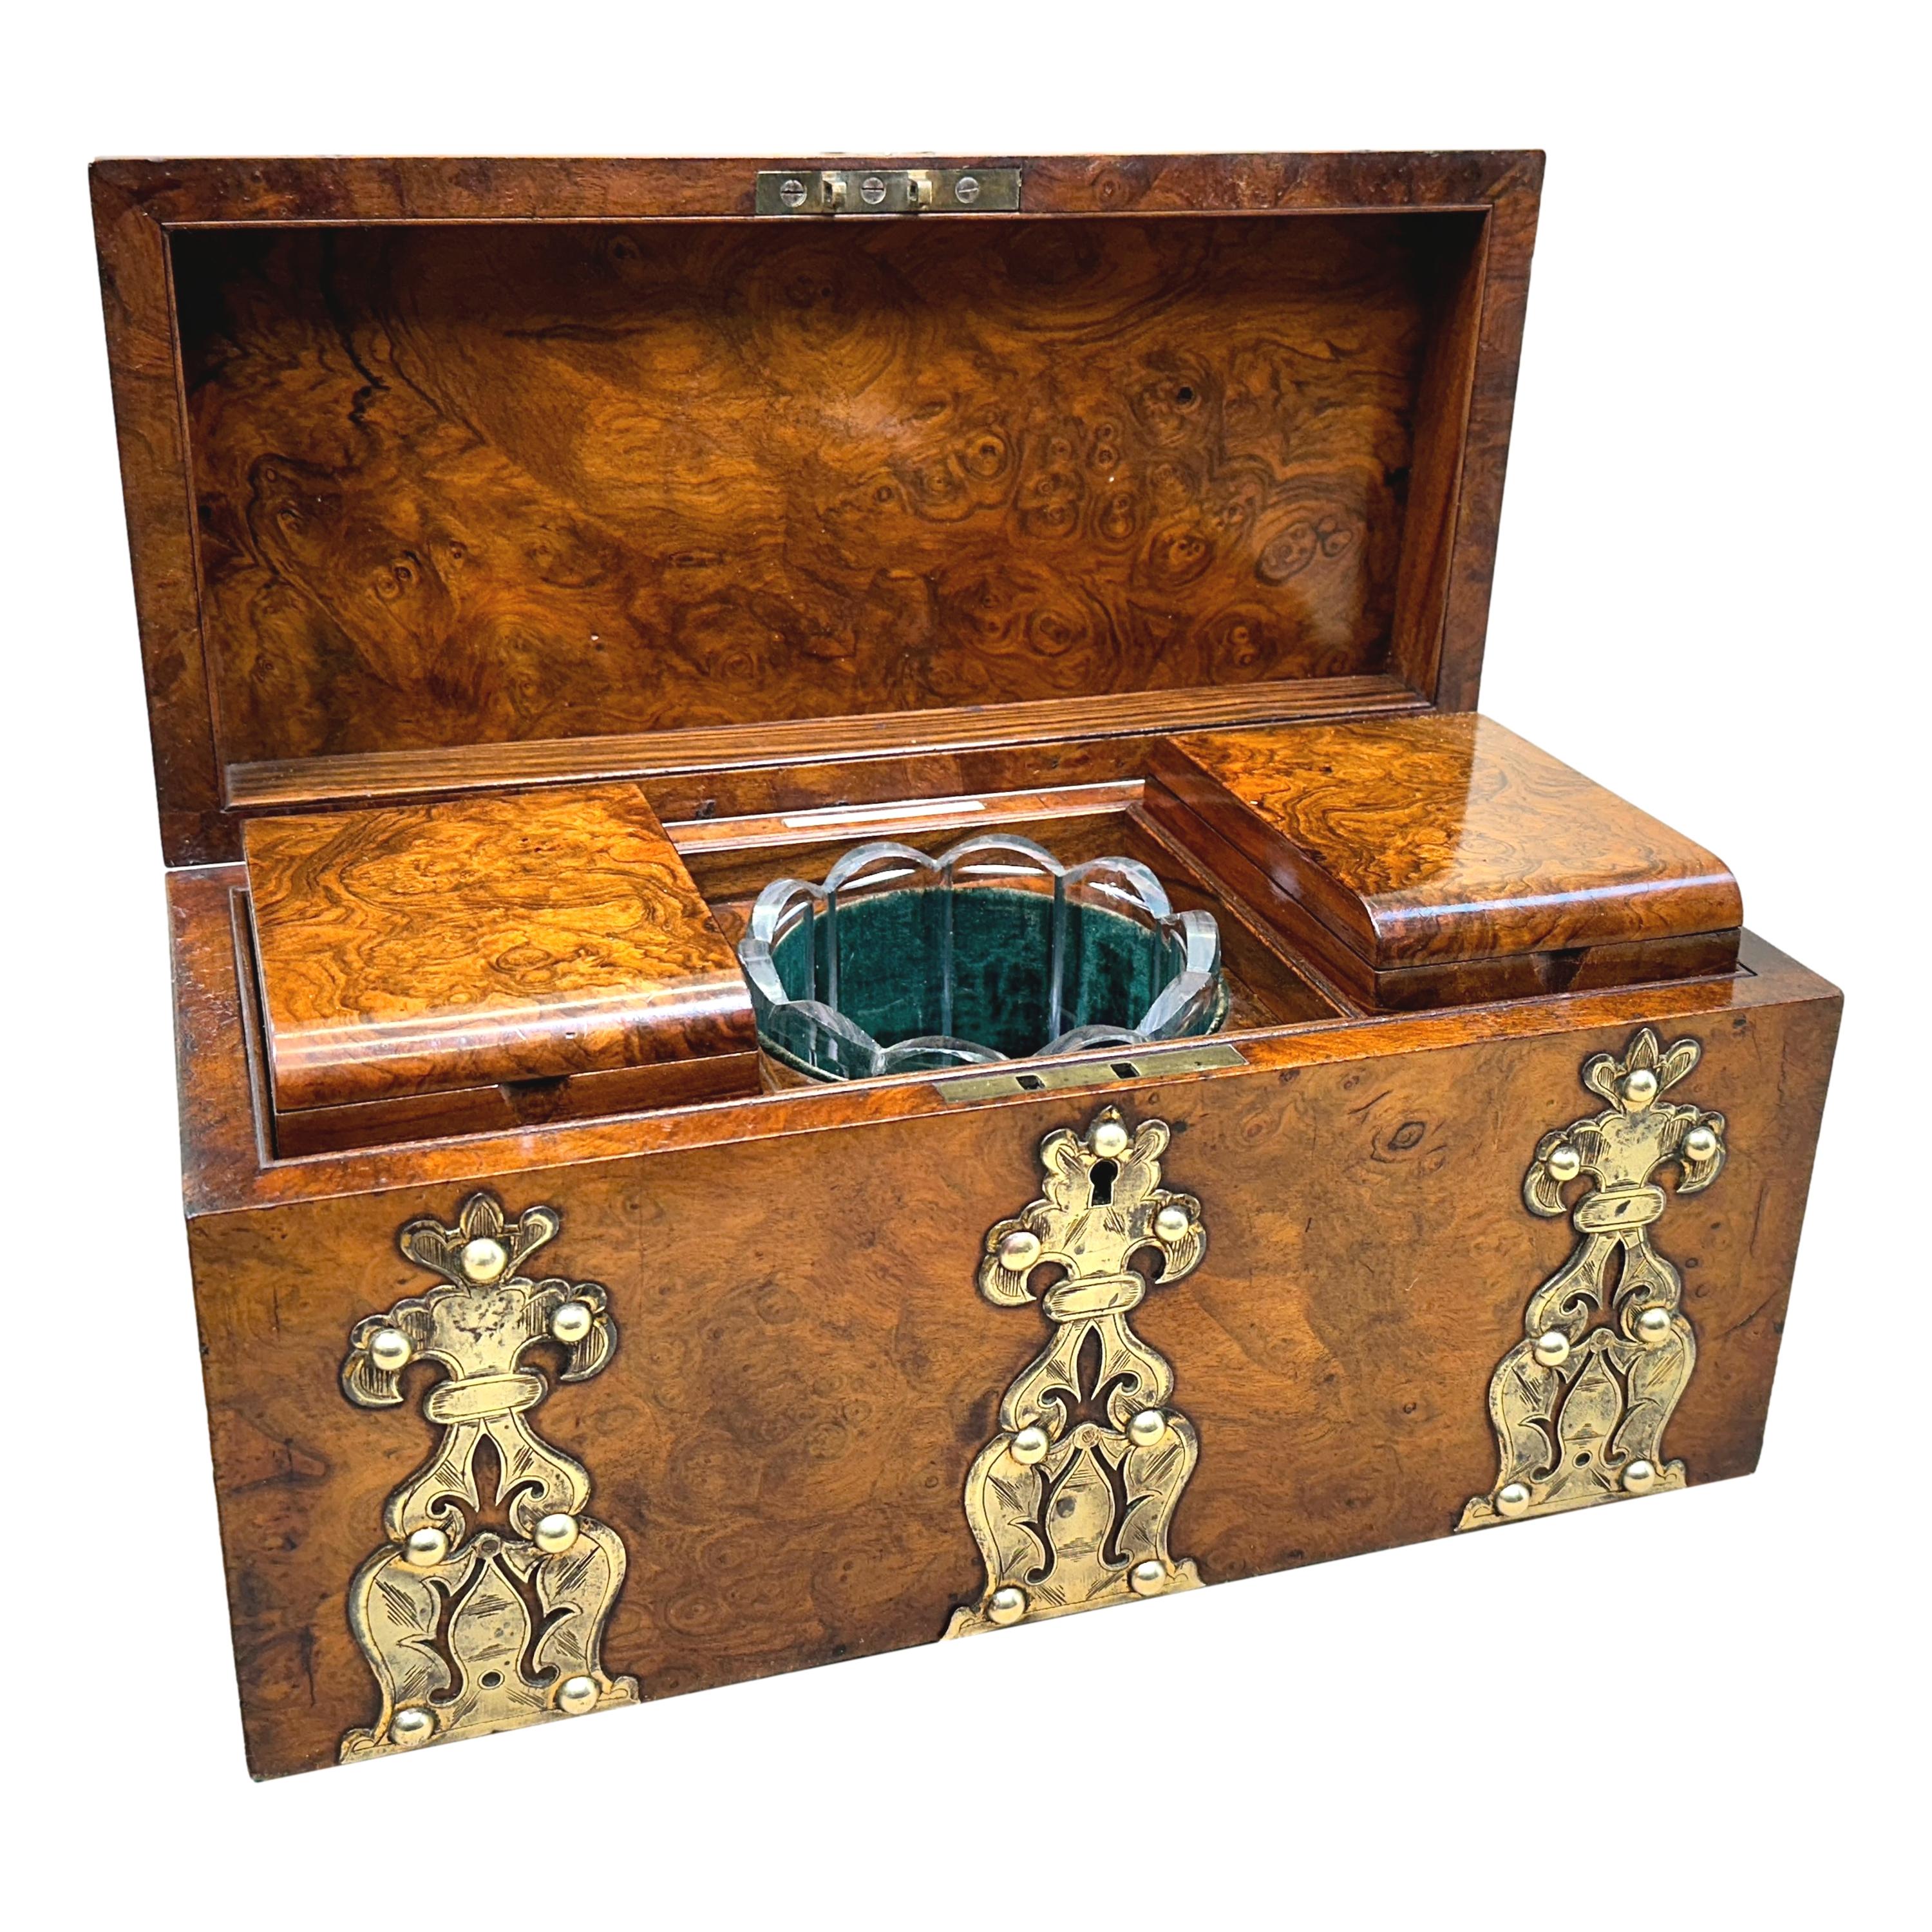 Eine hervorragende Qualität Mitte des 19. Jahrhunderts Burr Walnuss Tee Caddy mit Original Messing montiert Dekoration und gewölbten Deckel umschließt zwei abnehmbare Deckel Fächer und Glas Mixing Bowl.

Stempel des Herstellers - 